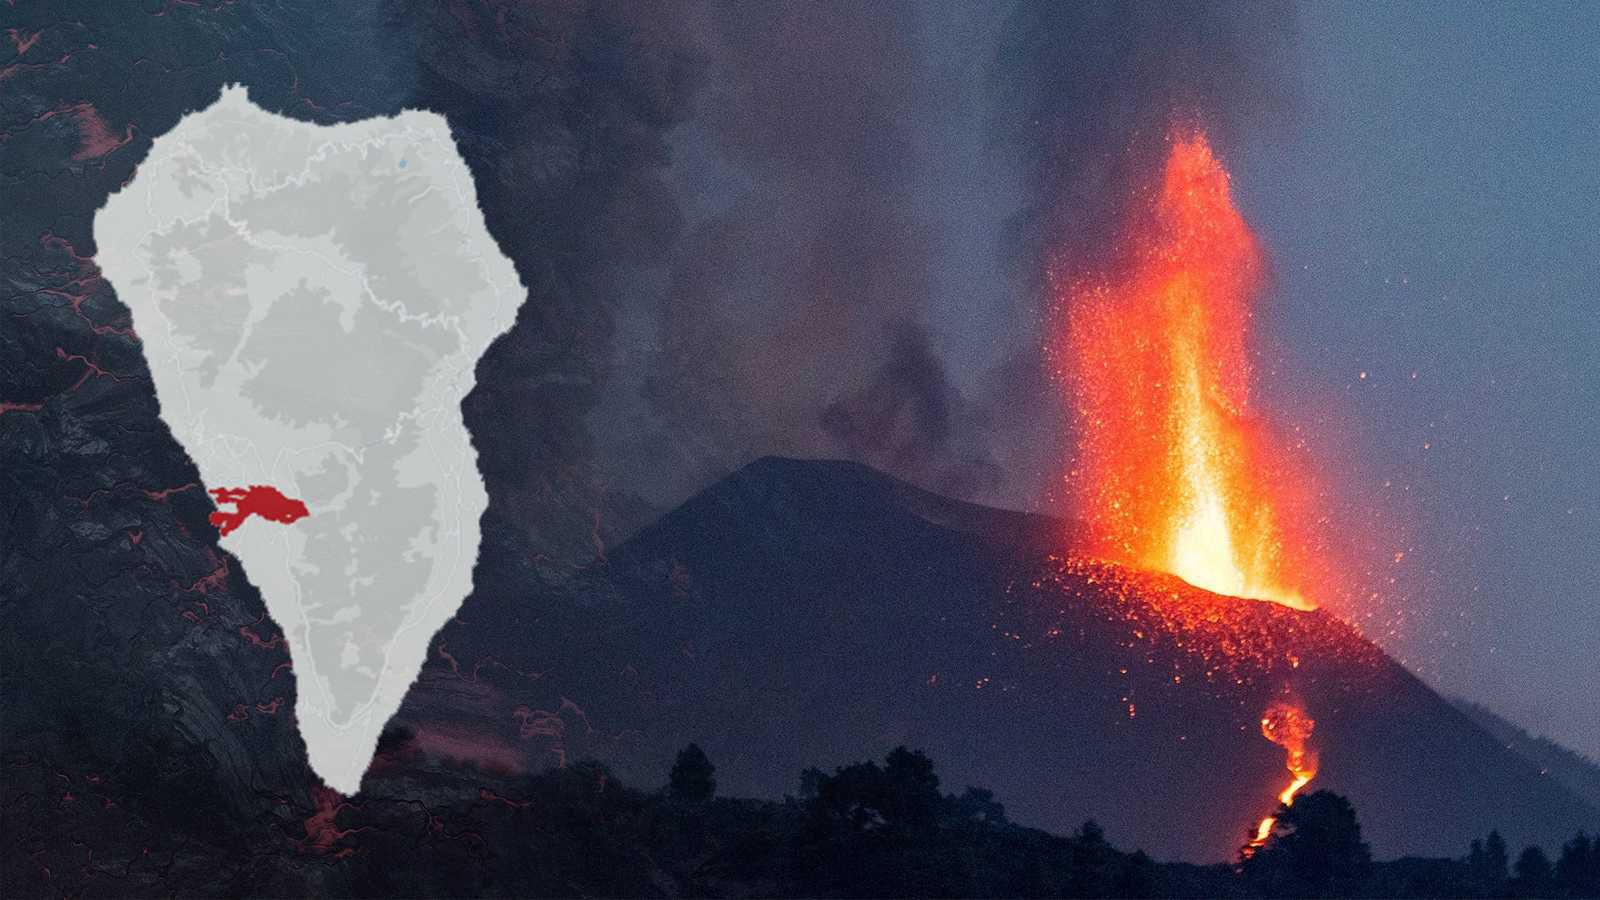 Día 65 desde el comienzo de la erupción del volcán. Persiste la emisión estromboliana y coladas activas en varias zonas